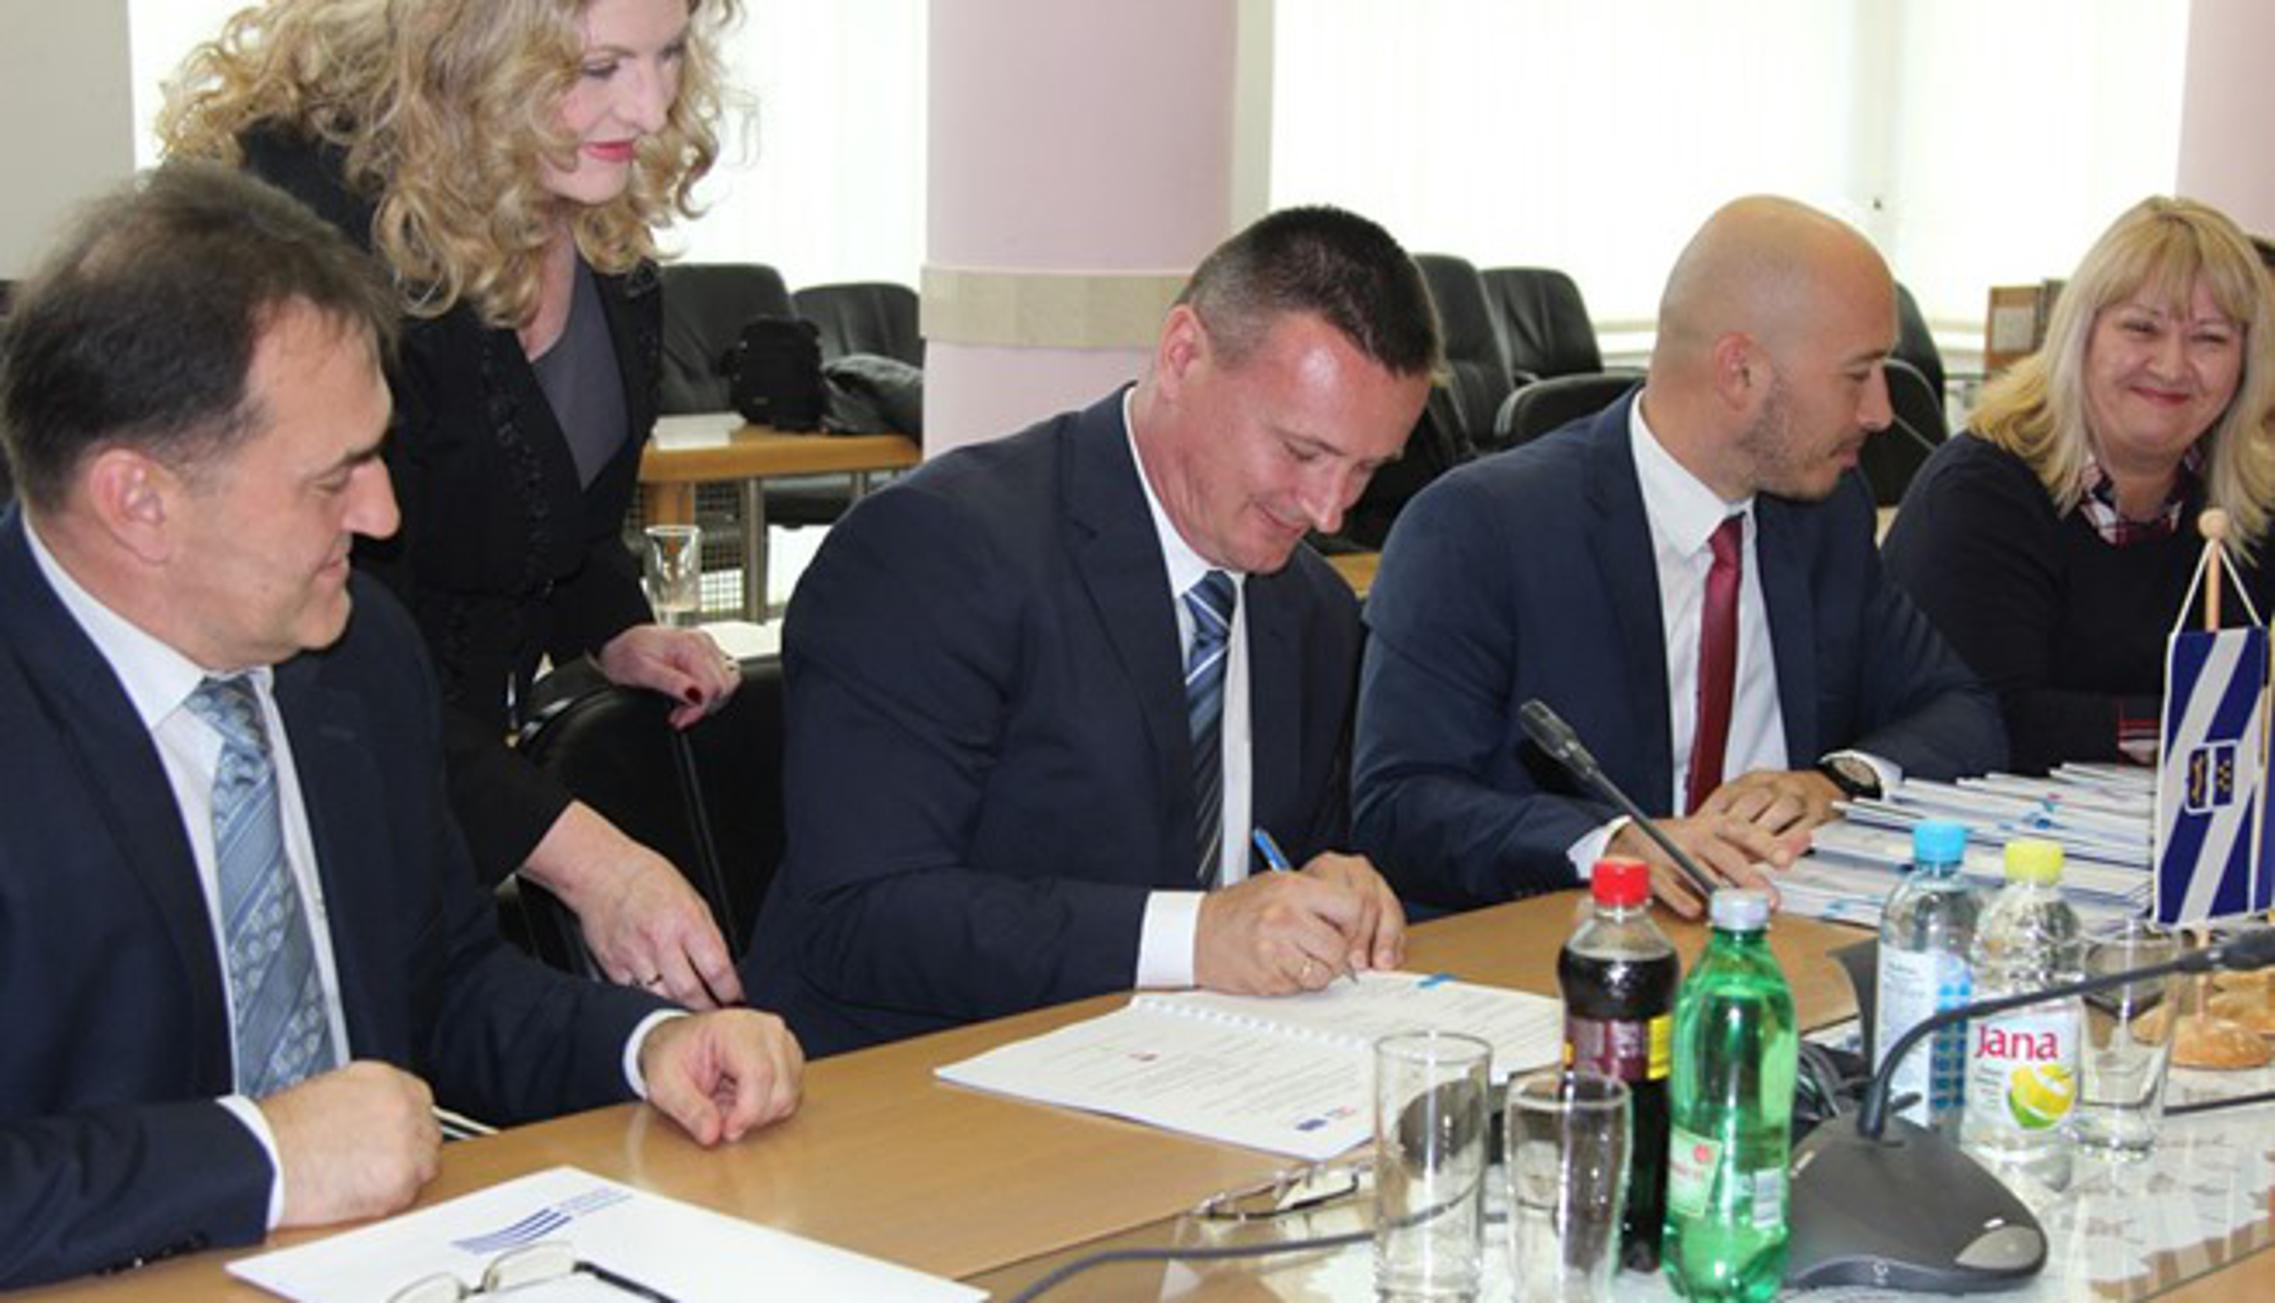 Župan Danijel Marušić s najbližim suradnicima tijekom potpisivanja ugovora